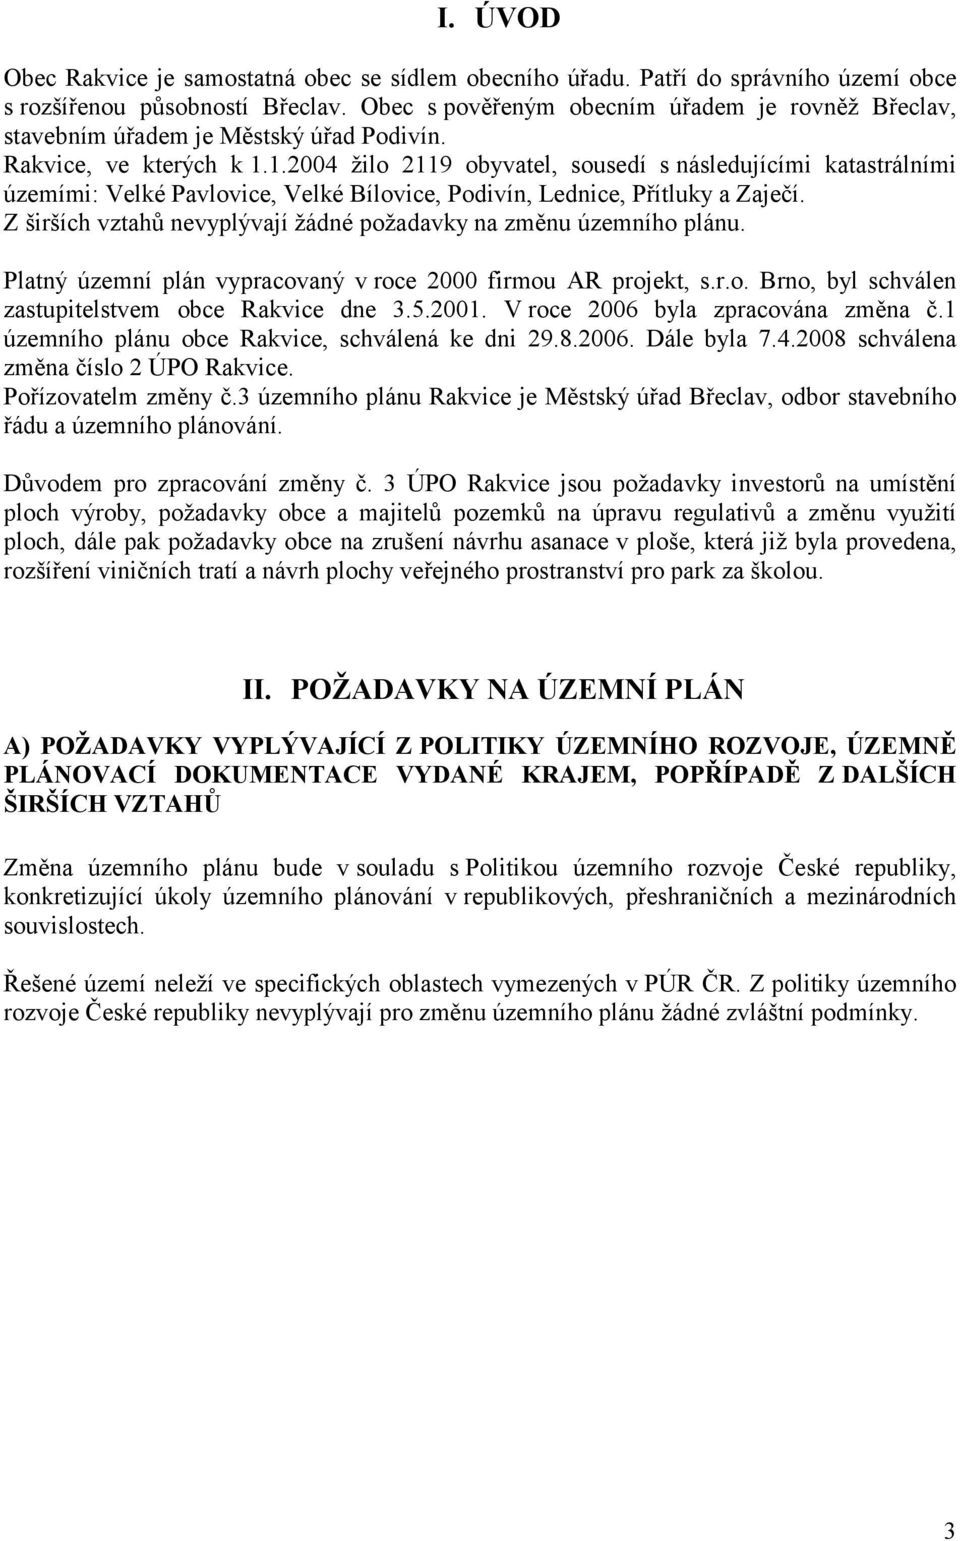 1.2004 žilo 2119 obyvatel, sousedí s následujícími katastrálními územími: Velké Pavlovice, Velké Bílovice, Podivín, Lednice, Přítluky a Zaječí.